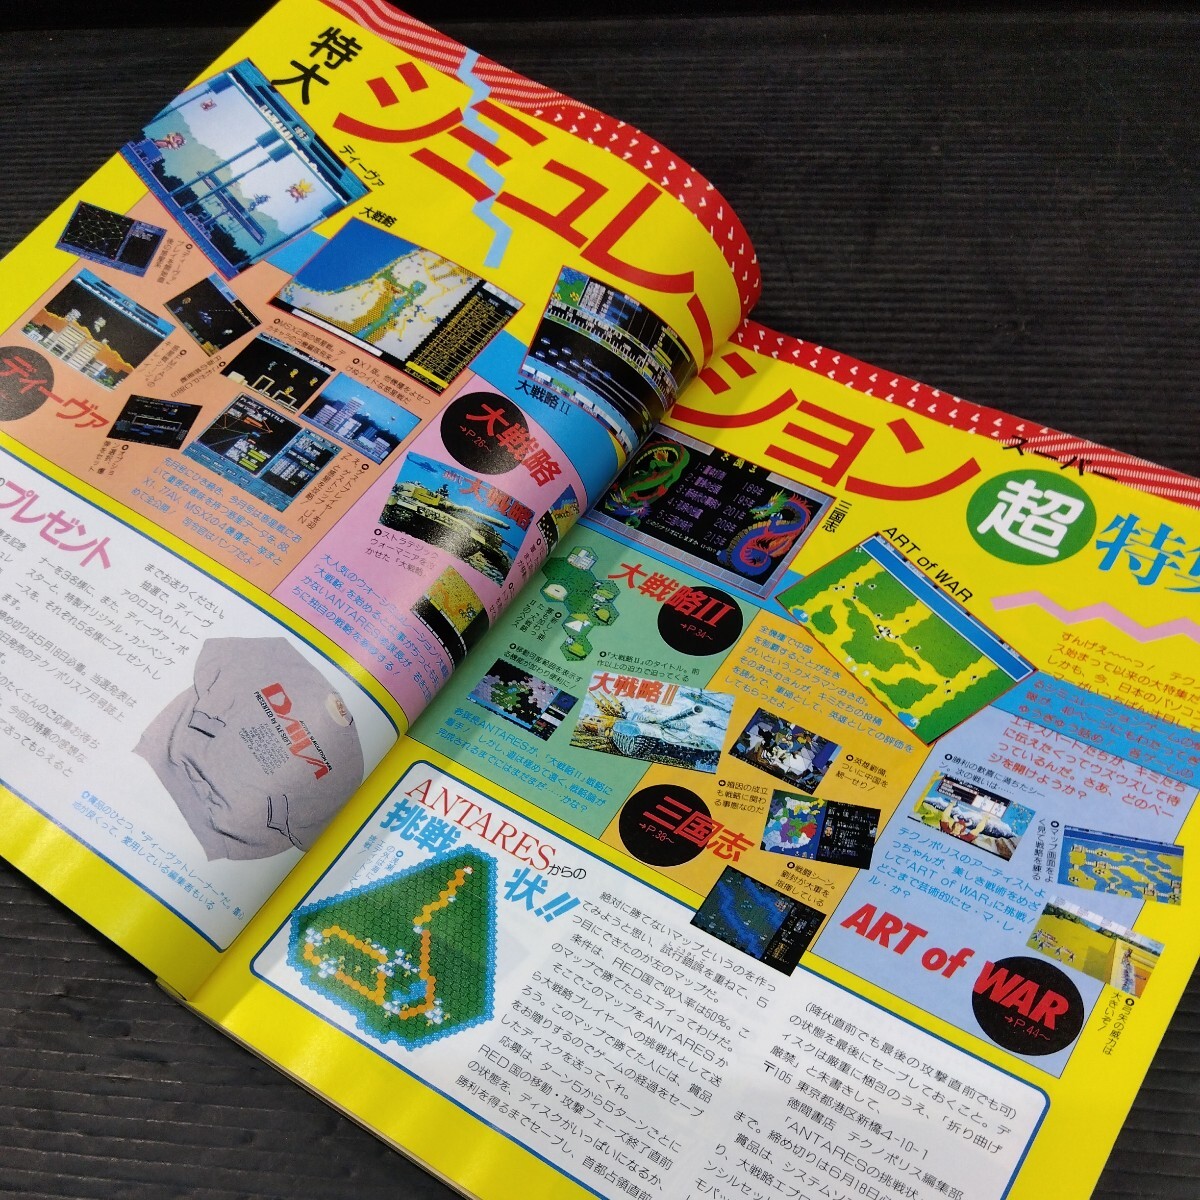 テクノポリス 1987年5月号 徳間書店 PCゲーム雑誌 貴重 月刊 ゲーム 情報誌 レトロ本 シミュレーションゲーム超特集 PC-88 MSX2 ポケコン